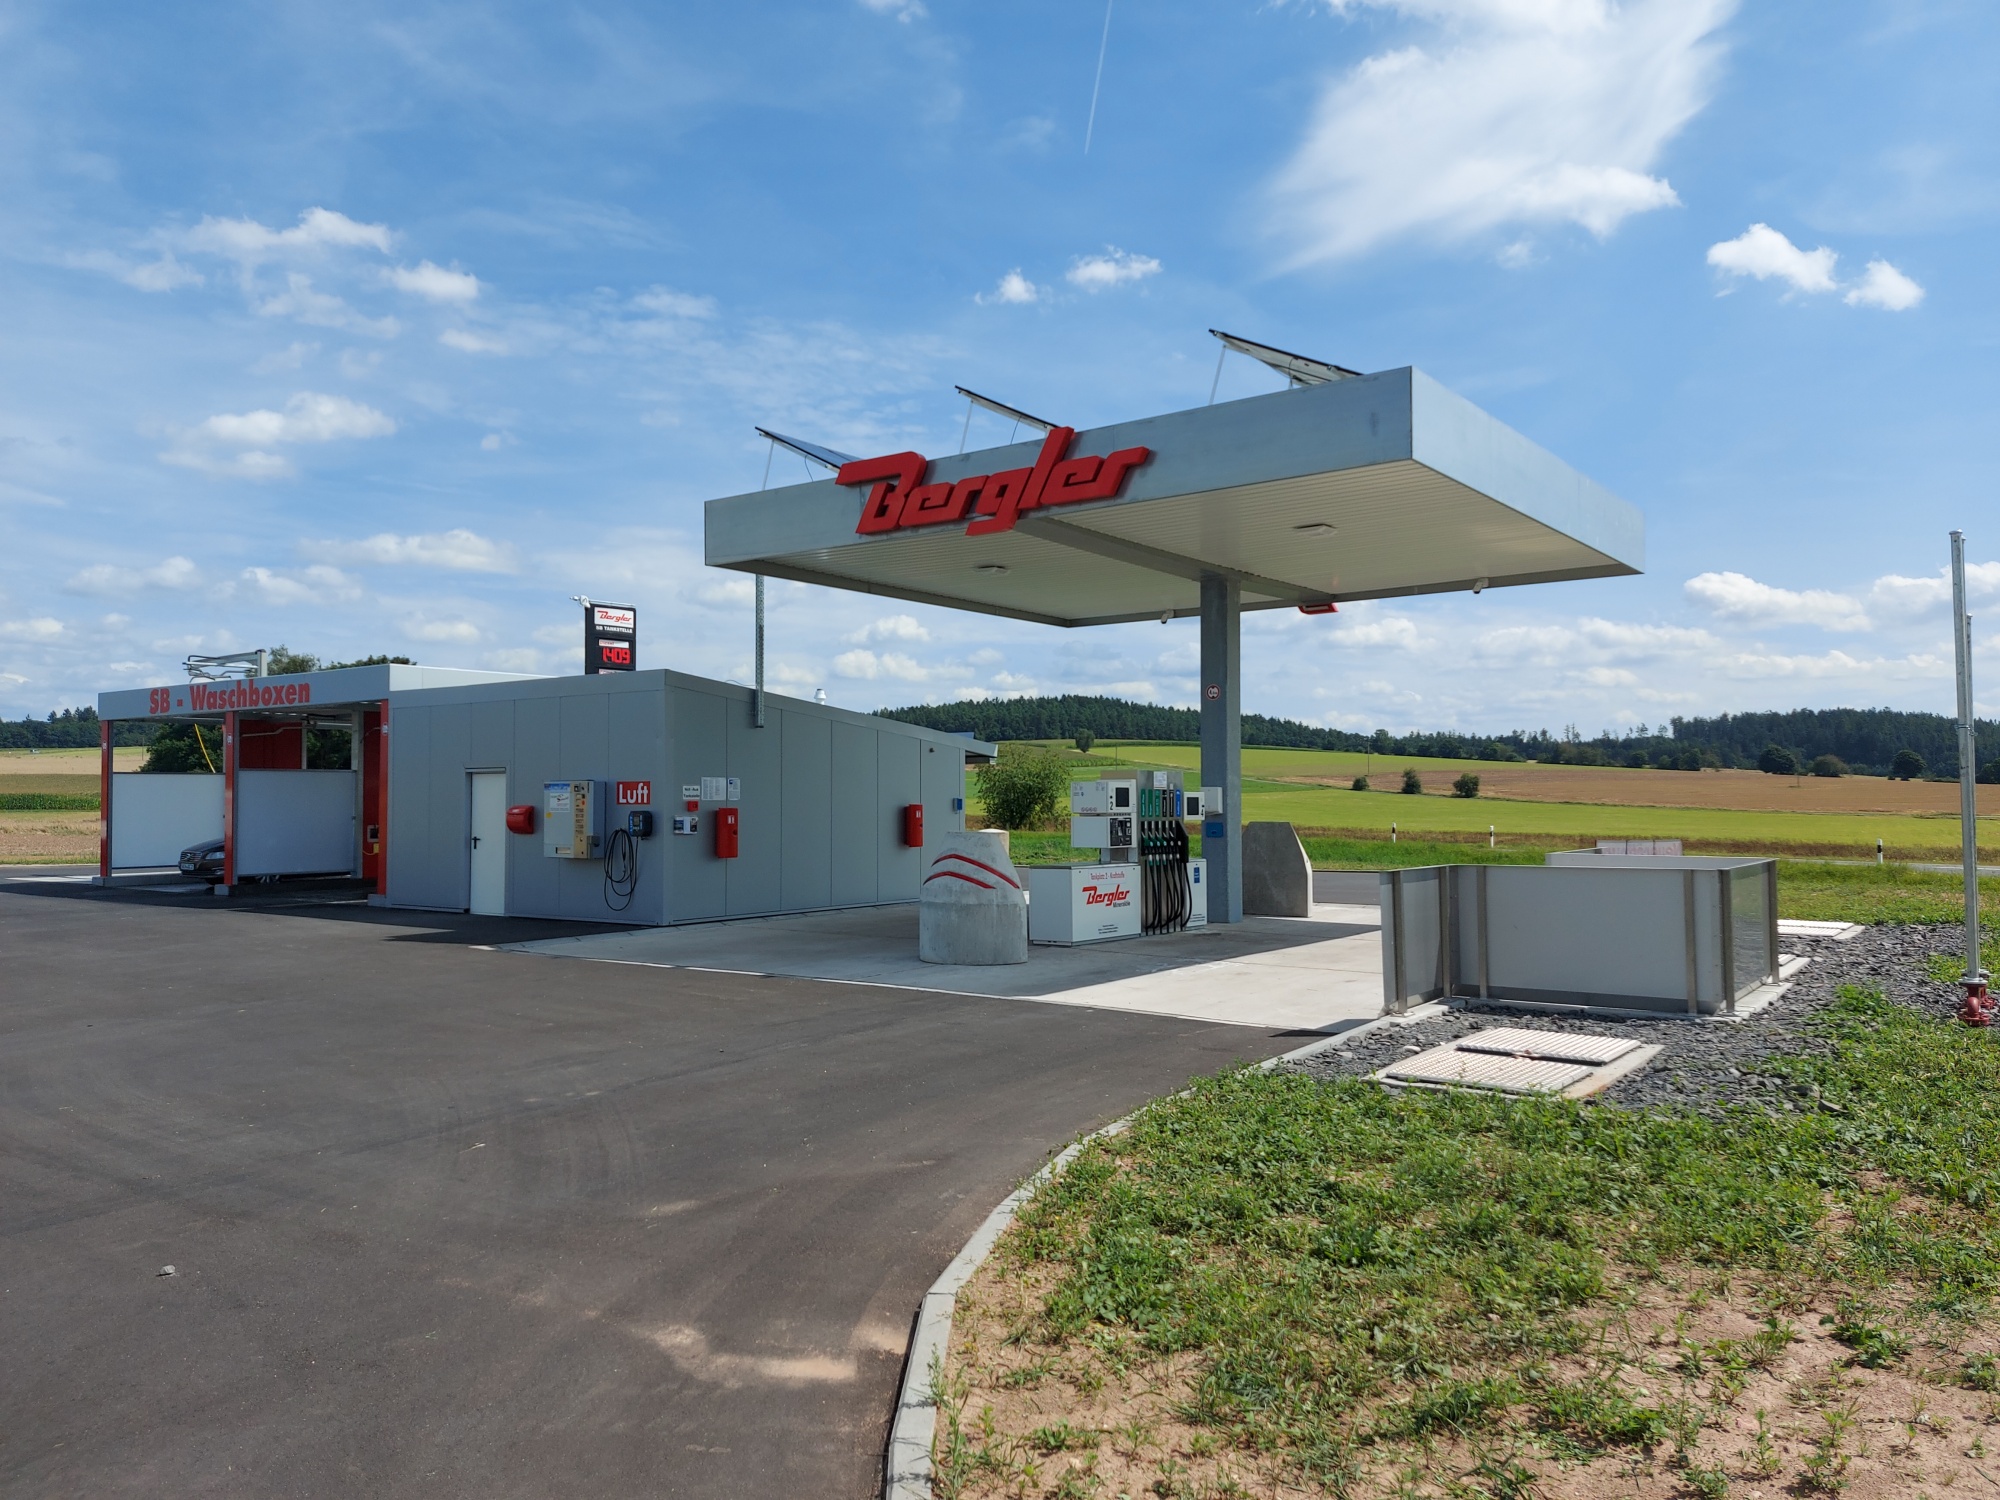 Tankstelle Bergler in Mantel (Kraftstoffe, Autowäsche, Tankautomat)